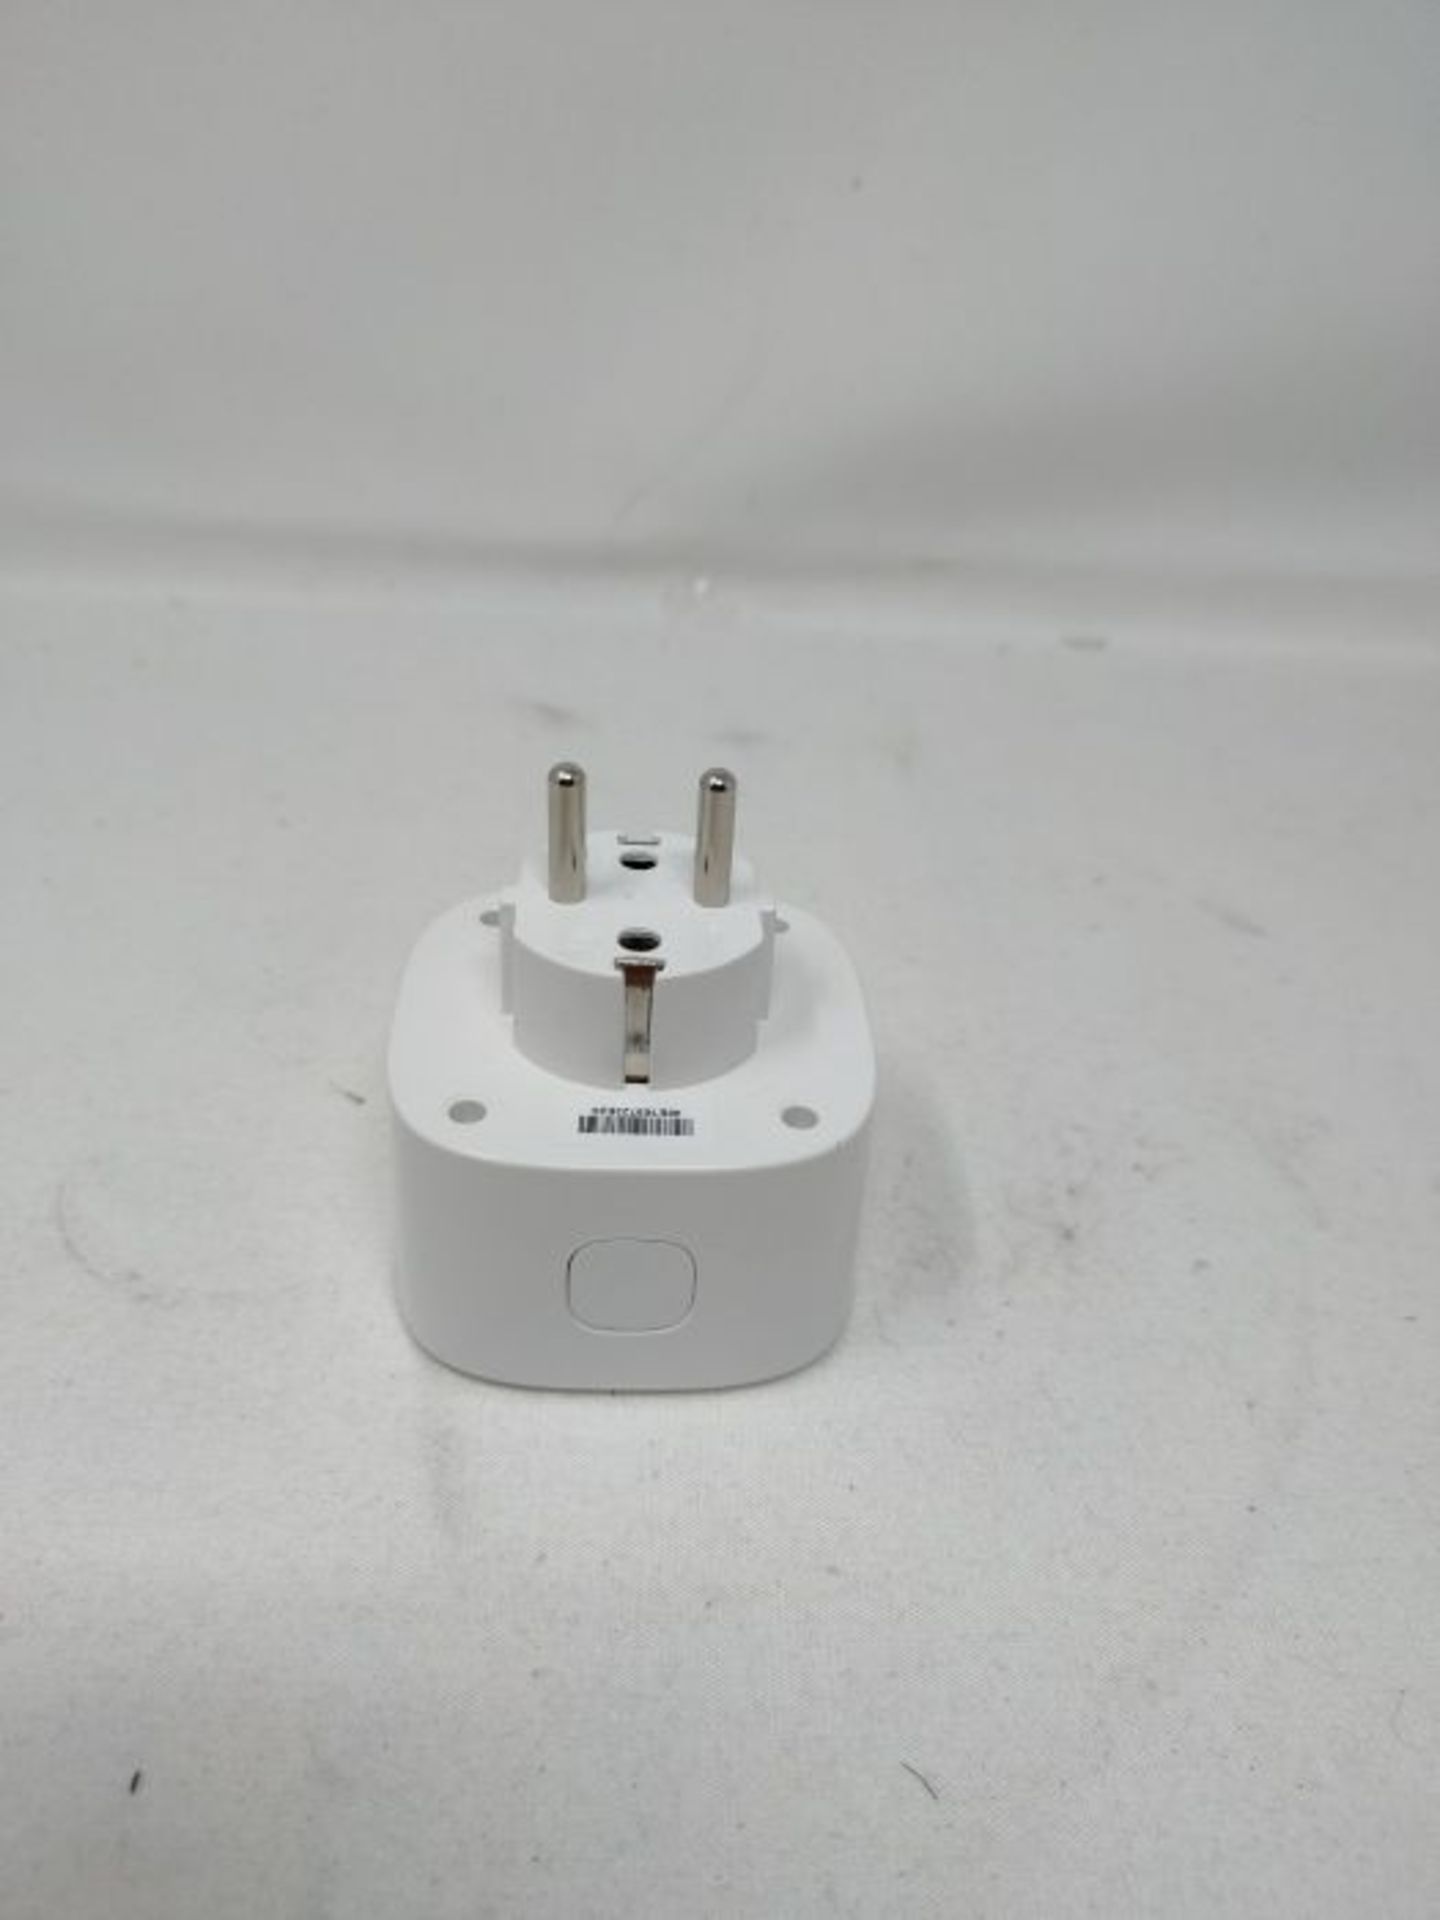 WLAN socket works with Apple HomeKit, meross Smart Plug, compatible with Siri, Alexa, - Image 2 of 2